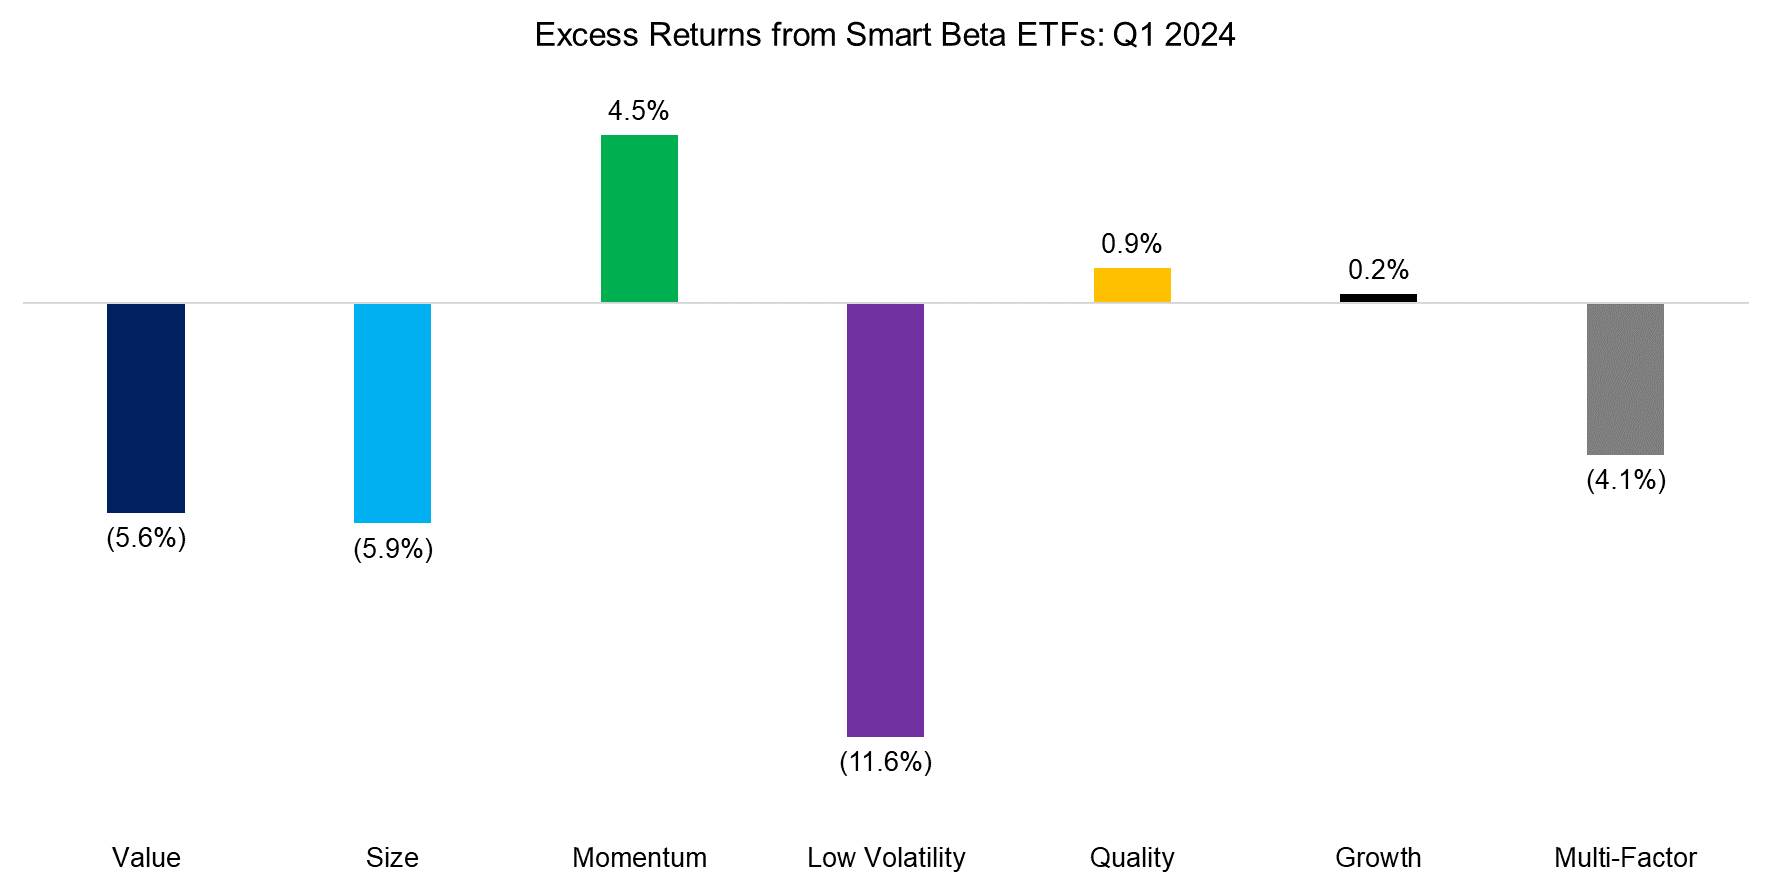 Excess Returns from Smart Beta ETFs Q1 2024